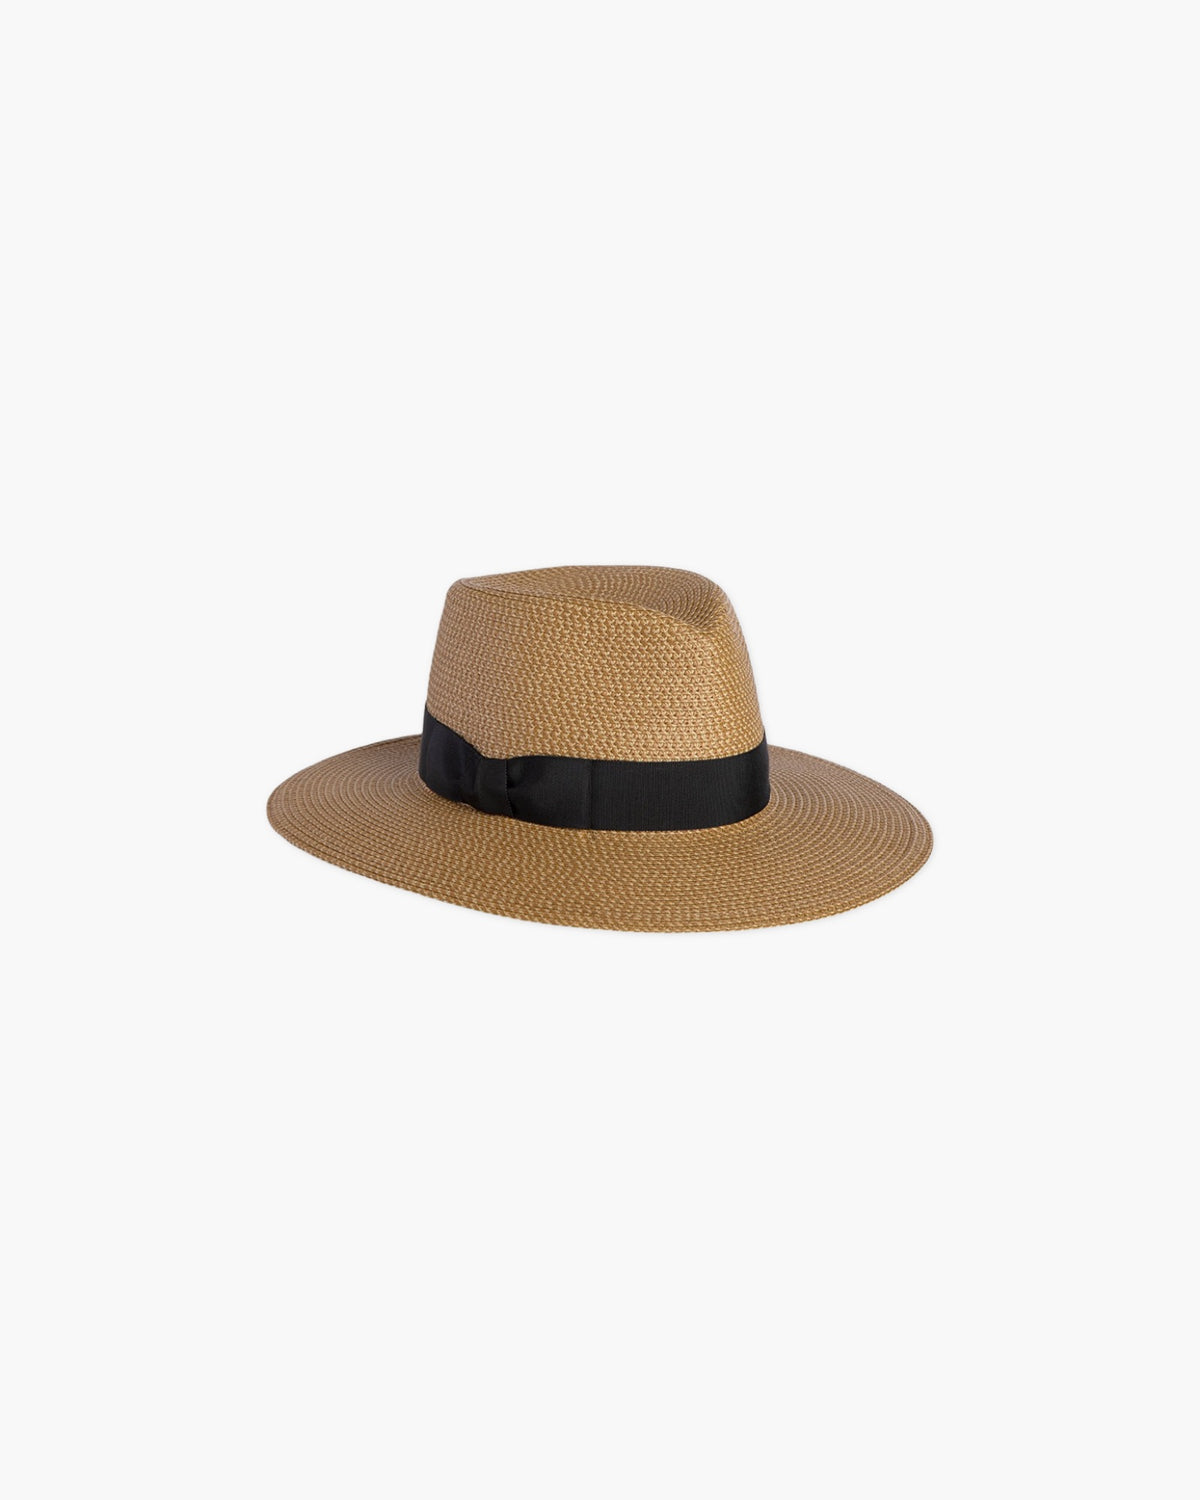 Brown Fedora Felt Hat Women Wide Brim: Tlaquepaque · Handmade in